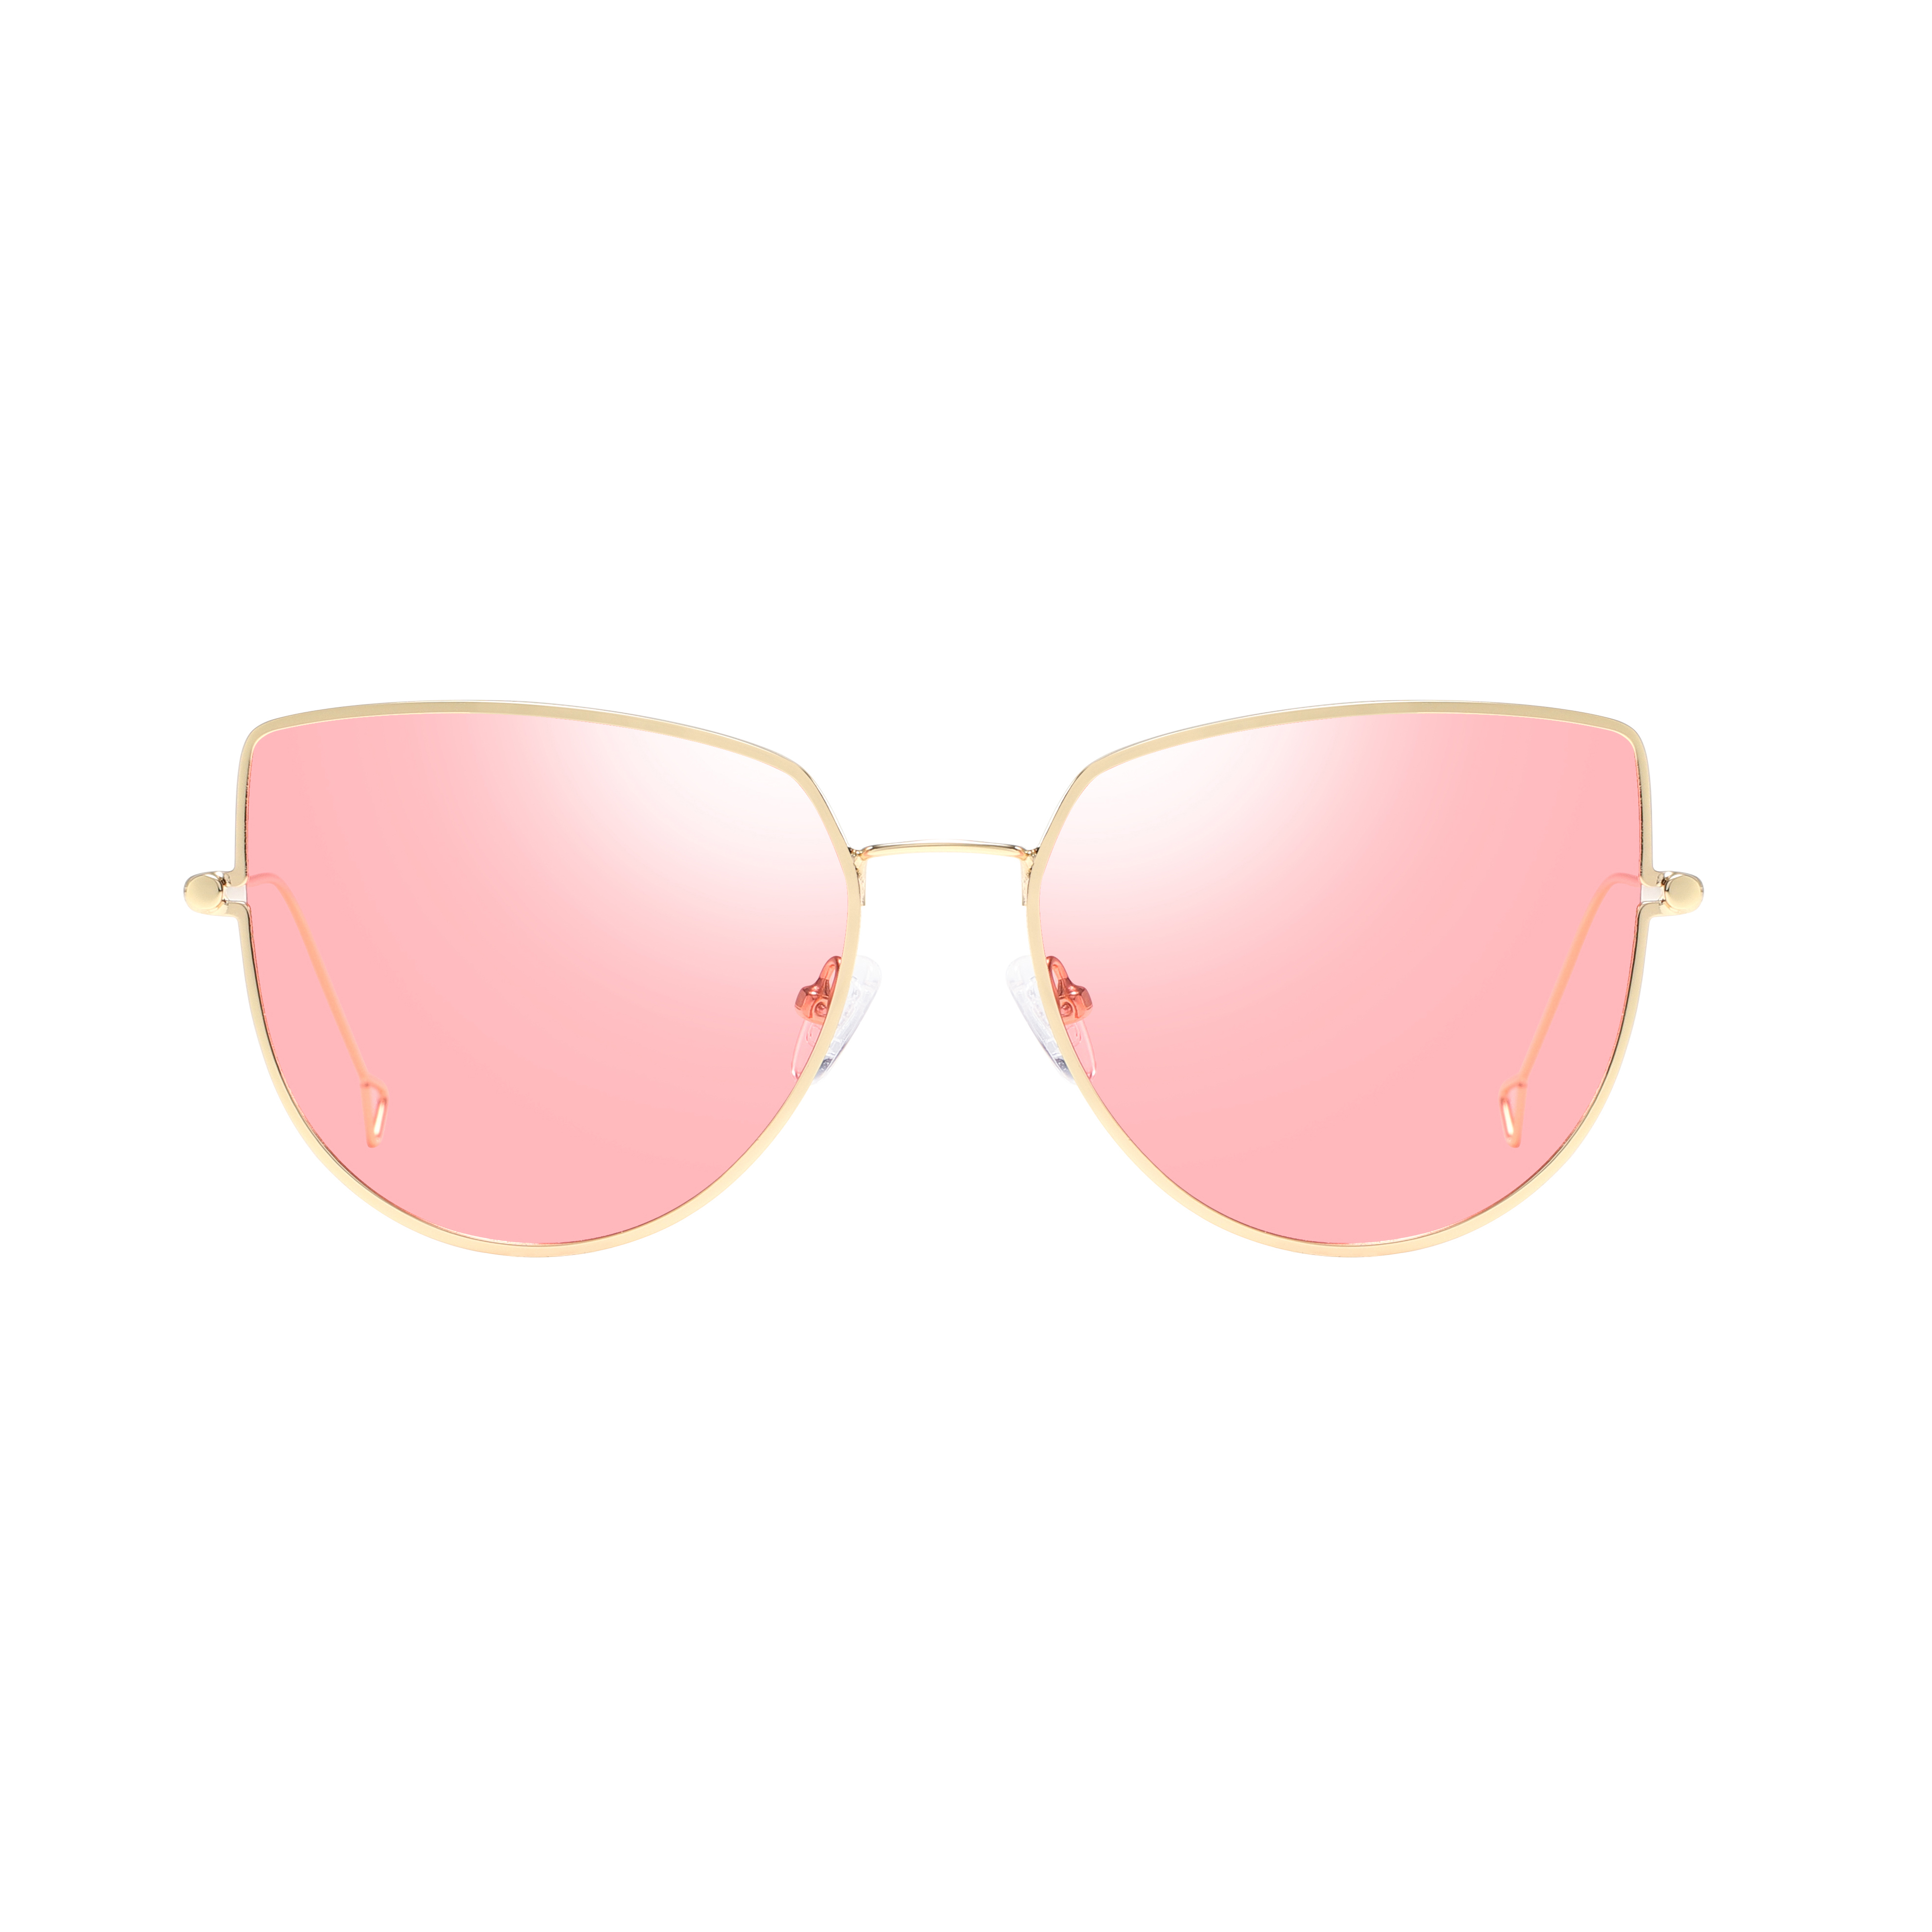 Eugeniaclassic Polarized Sunglasses Hombres Mujeres Retro Diseñador de marca de alta calidad Gafas de sol